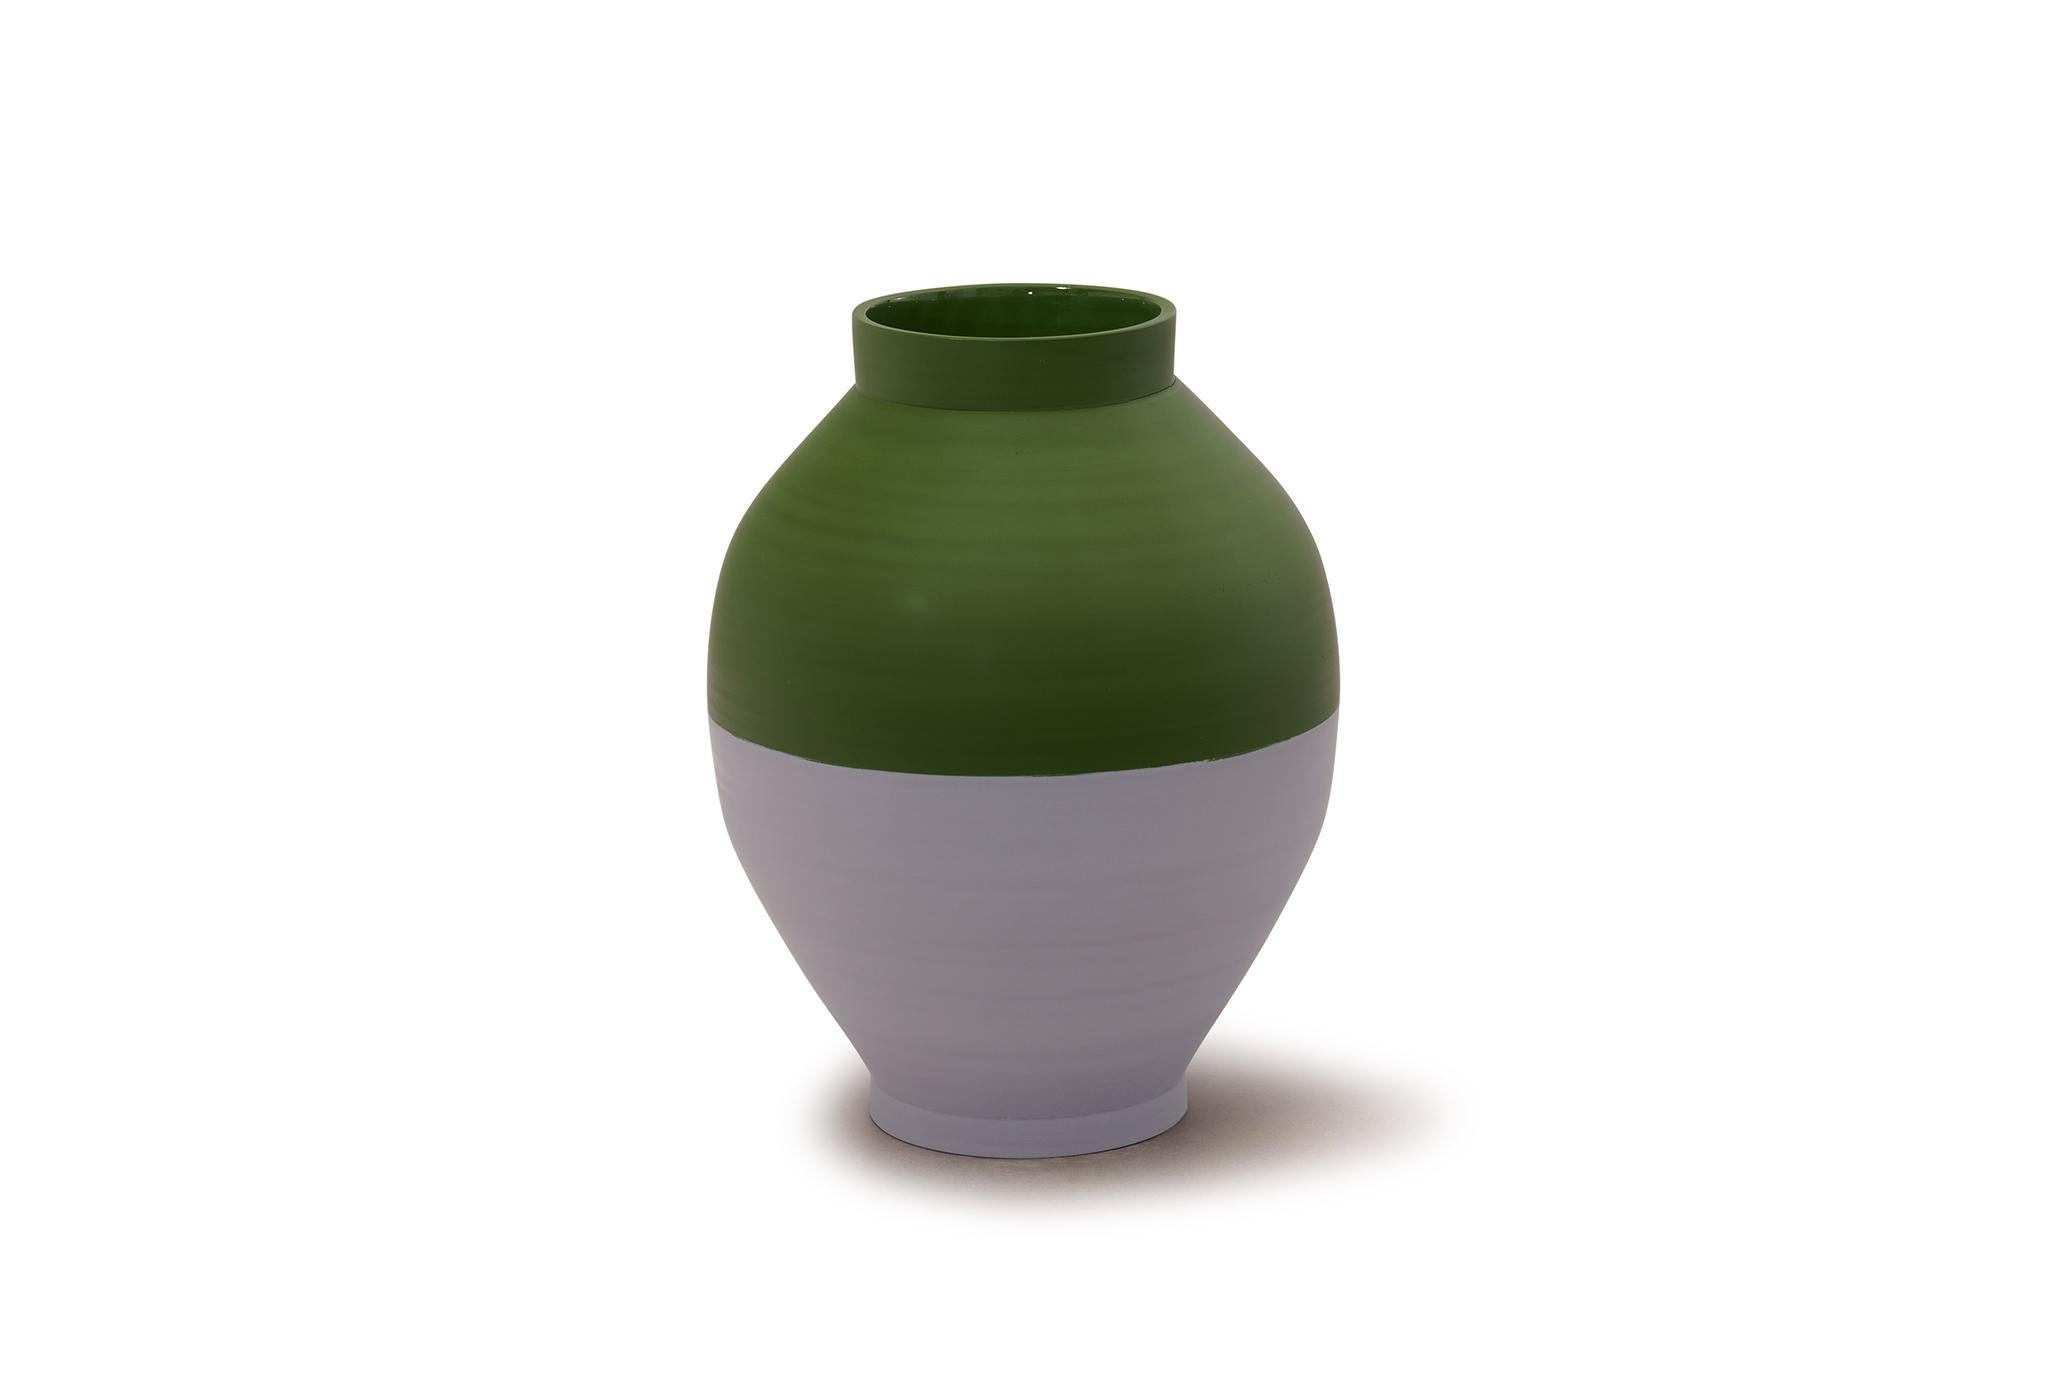 Halb Halb Vase von Jung Hong
Einzigartiges Stück
Abmessungen: B 23 x T 23 x H 31,5 cm
MATERIALIEN: Porzellan 

Ich verwende die Technik des 'sang-gam' (=Einlegearbeit) mit meinem speziellen Werkzeug, das ich selbst hergestellt habe, und kreiere